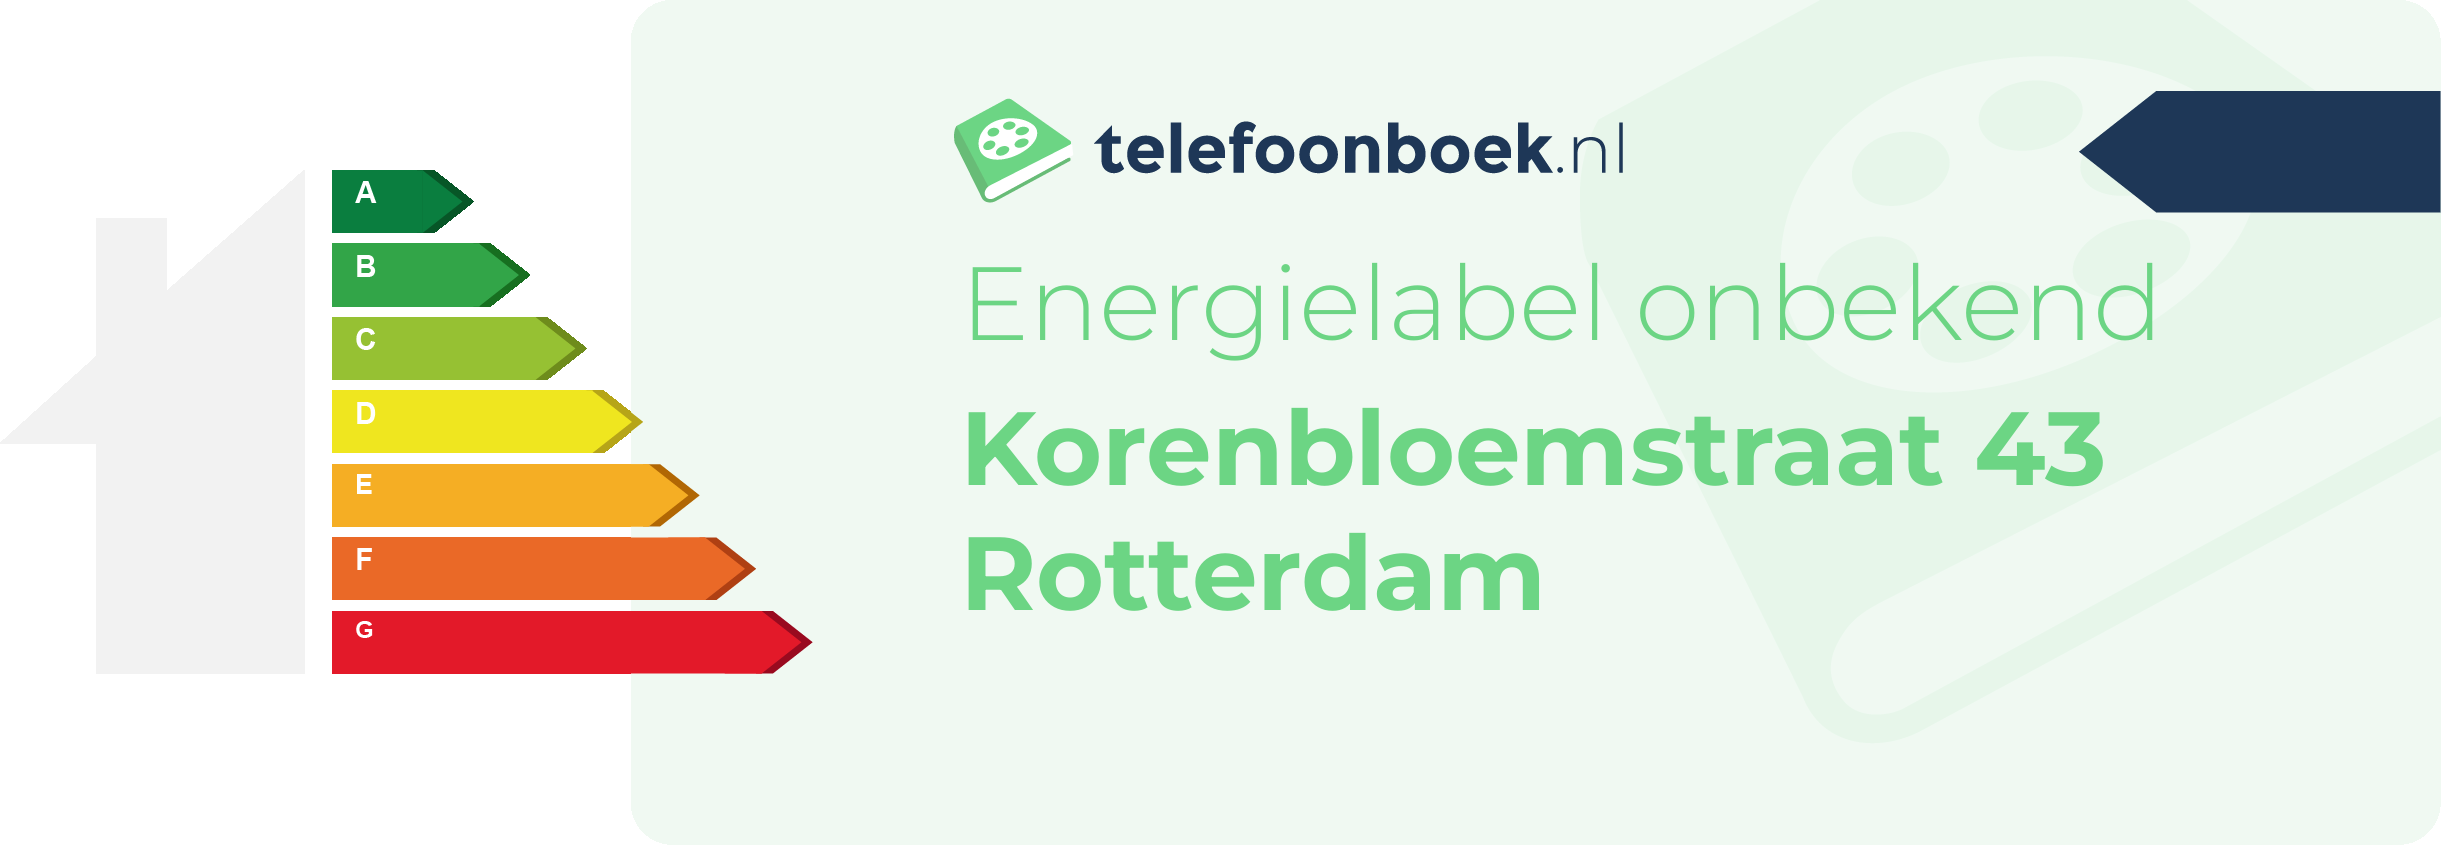 Energielabel Korenbloemstraat 43 Rotterdam